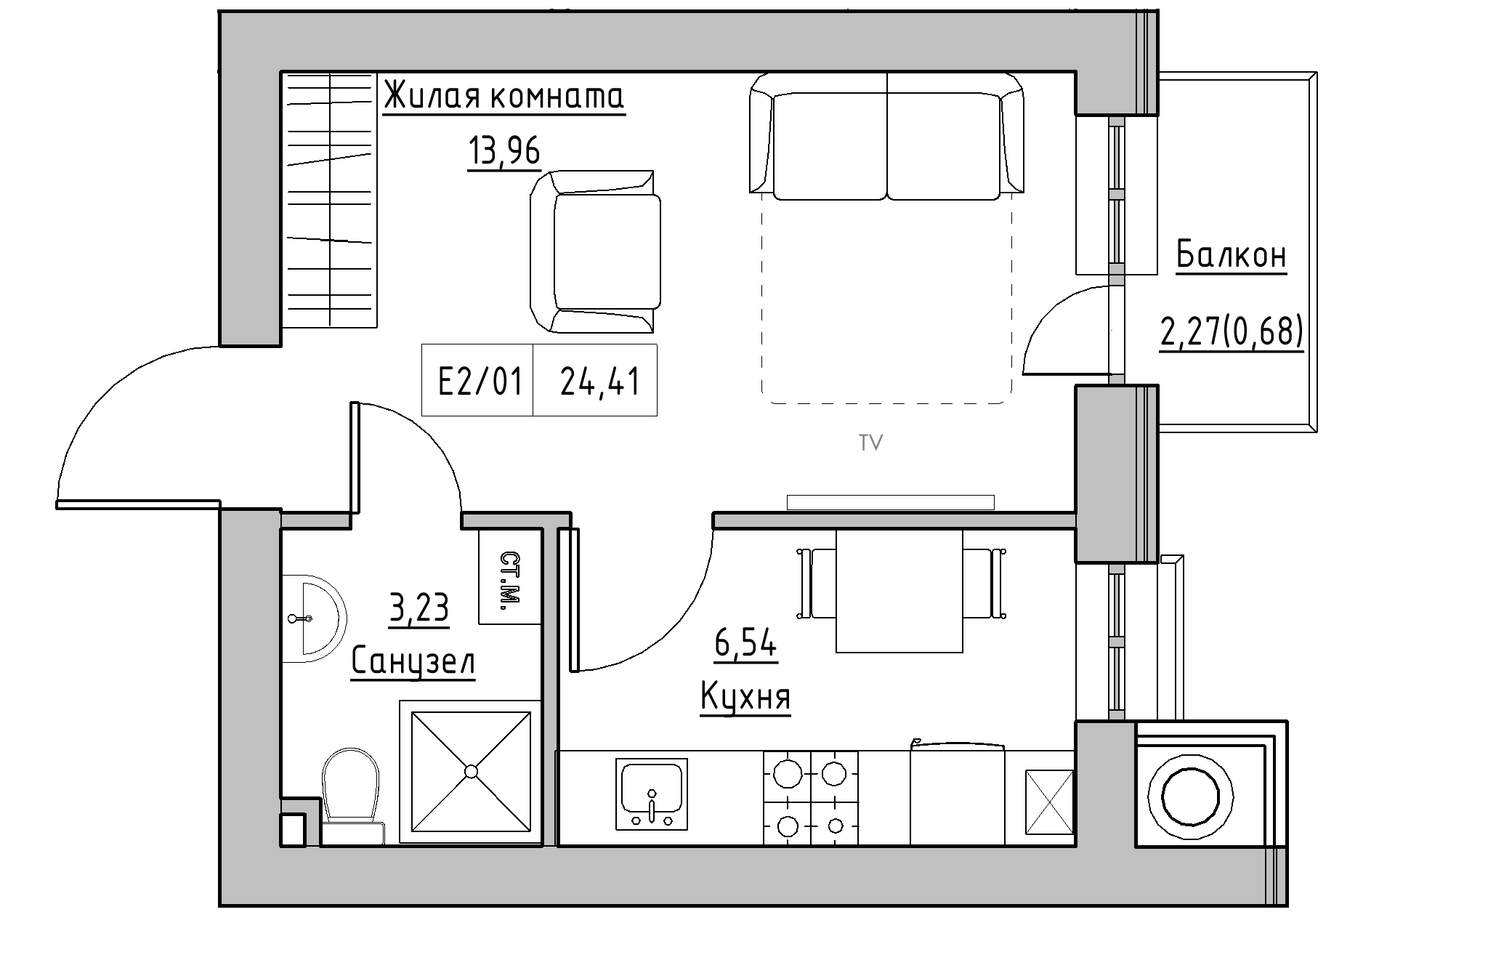 Планування 1-к квартира площею 24.41м2, KS-010-03/0009.